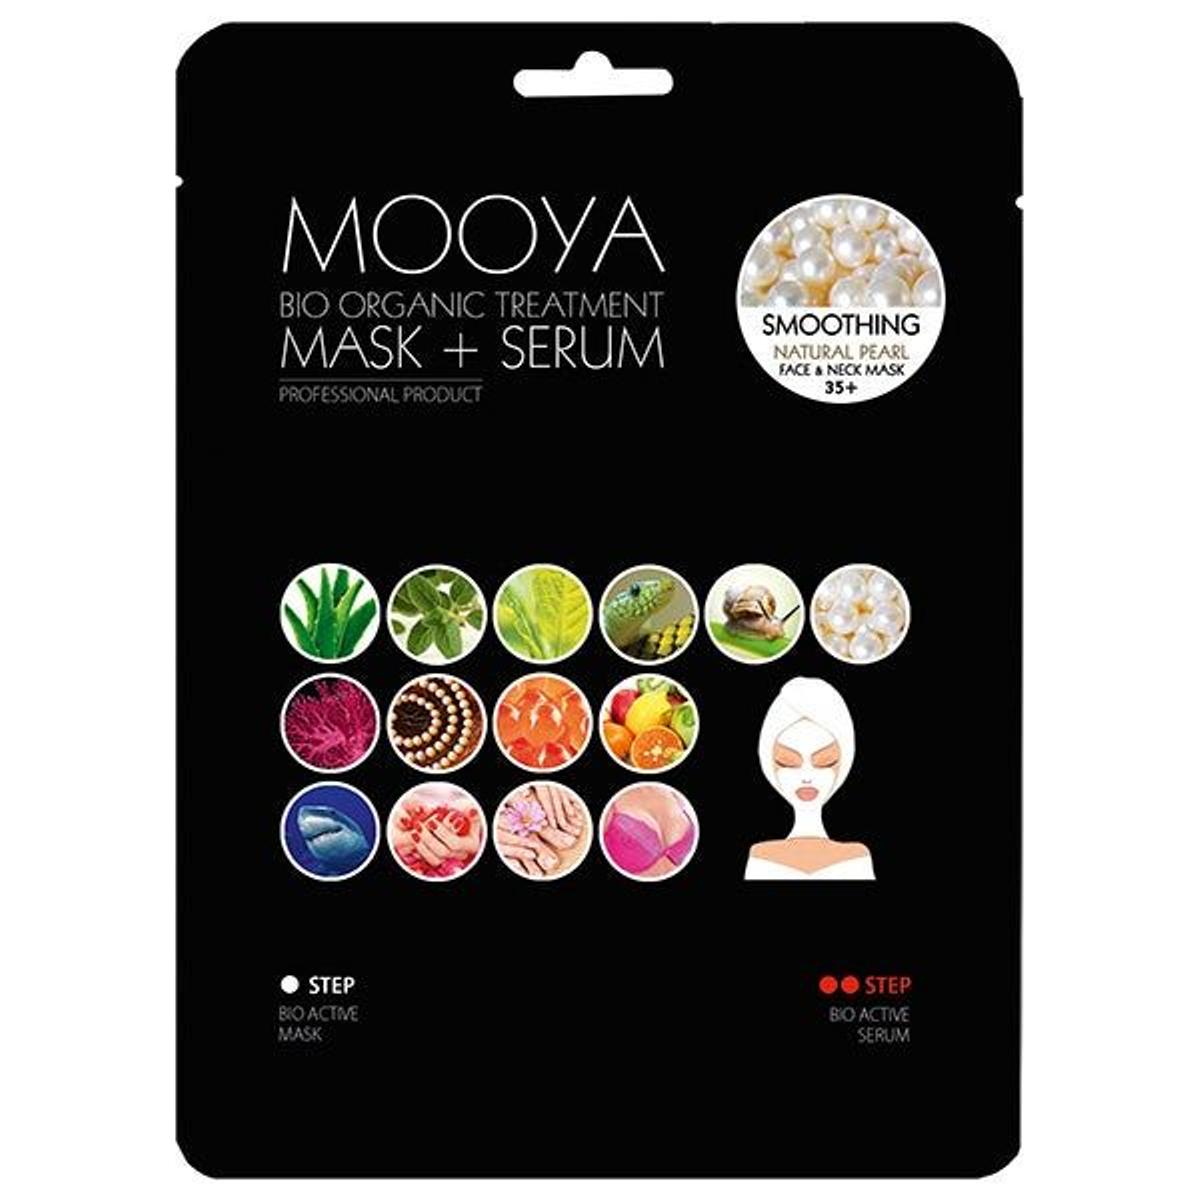 Máscara+serum Mooya Bio Organic suavidad y delicadeza con extracto de perla (Precio: 6,99 euros)